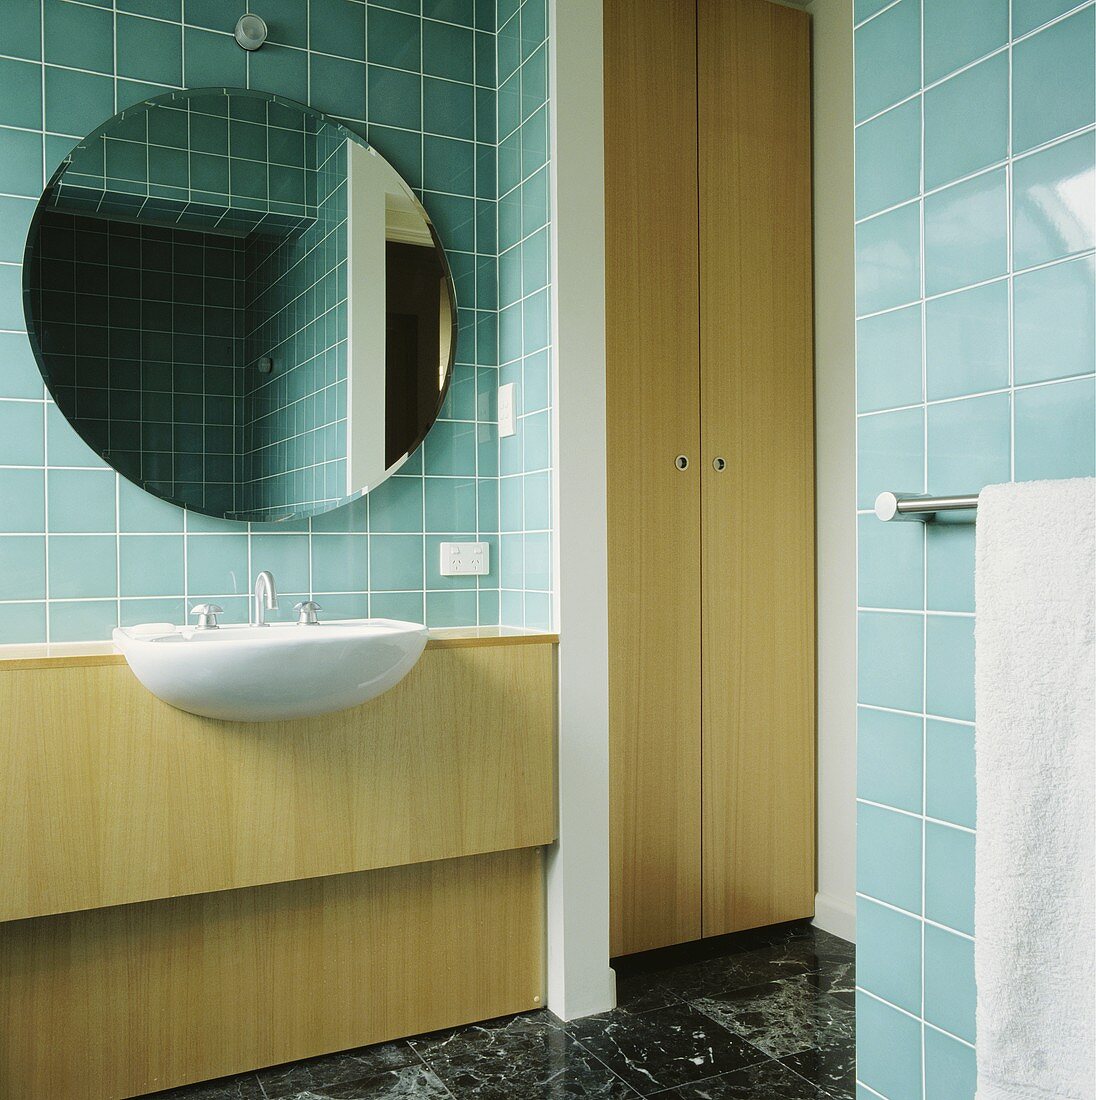 In einem türkis gefliesten Bad hängt ein kreisförmiger Spiegel über einem Waschbecken, das in einer holzgetäfelten Einheit eingelassen ist